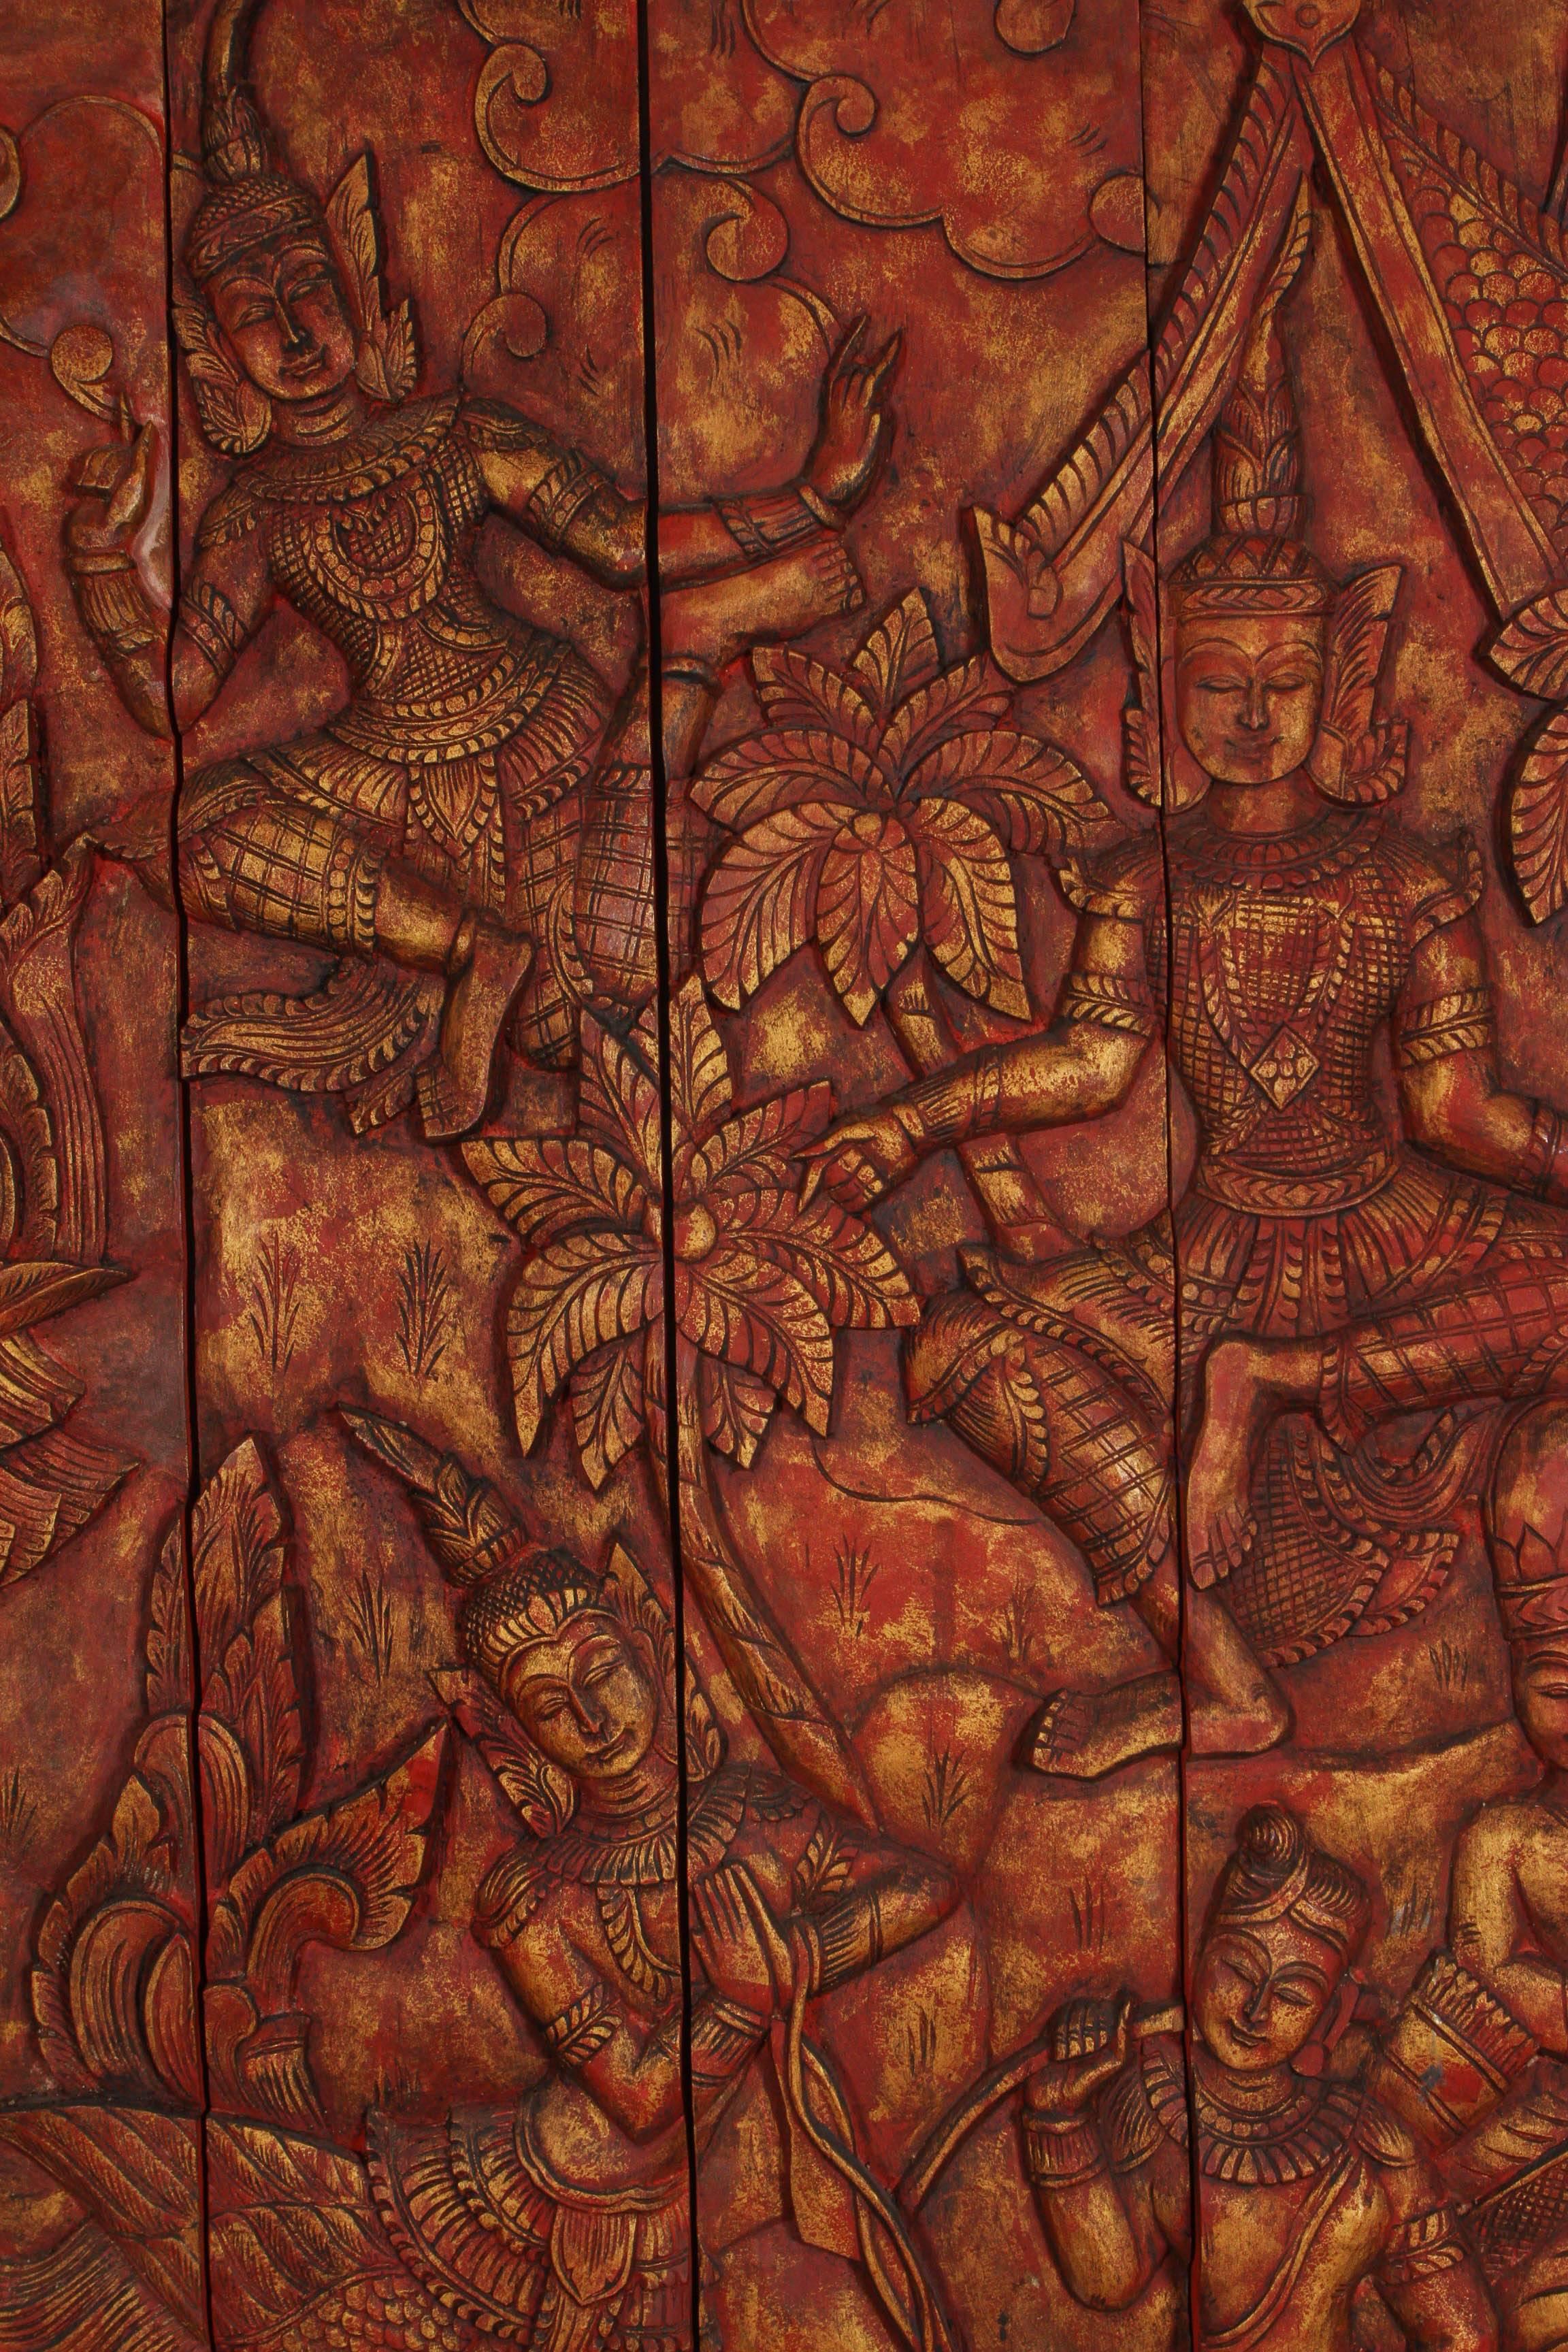 Antique Asian Thai monumental, mesurant 8' x 8' panneau de temple en bois sculpté à la main.
Il s'agit d'un panneau rouge et or thaïlandais unique en son genre, sculpté à la main avec des motifs en relief de Kinnaris, danseurs et chanteurs d'Asie